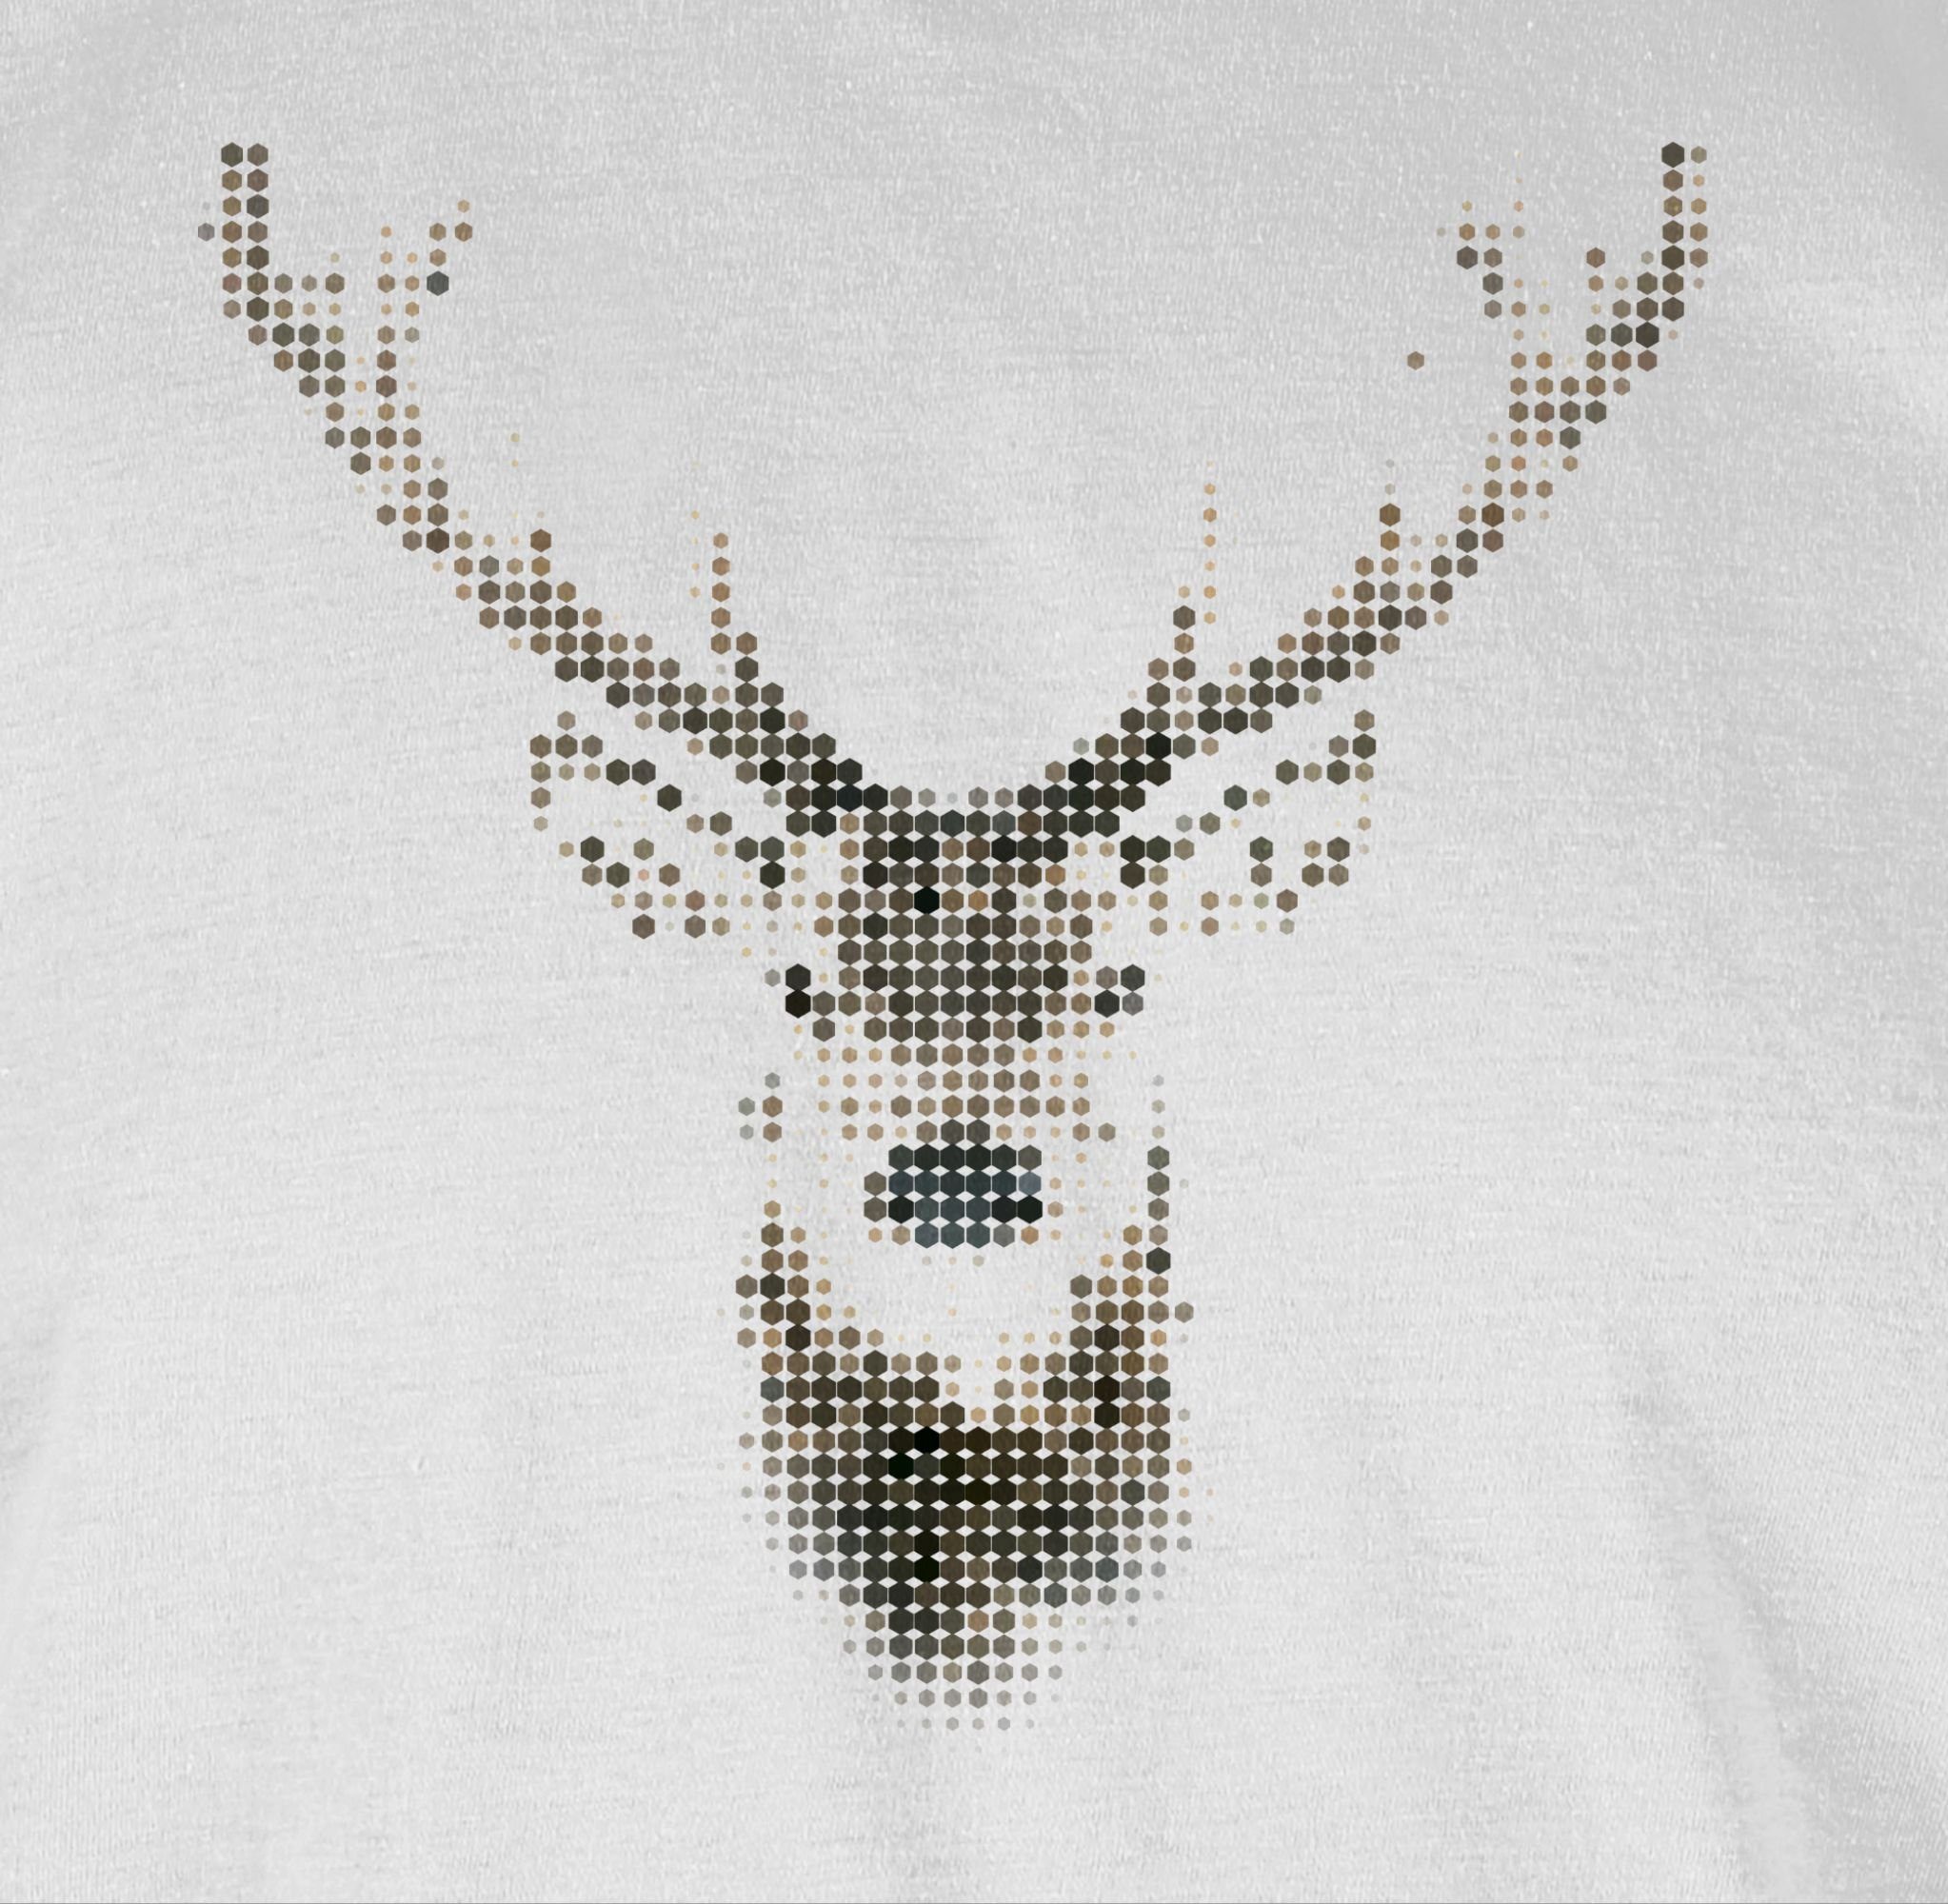 T-Shirt 03 Kleidung Weihachten Weiß Hirsch Pixel Shirtracer